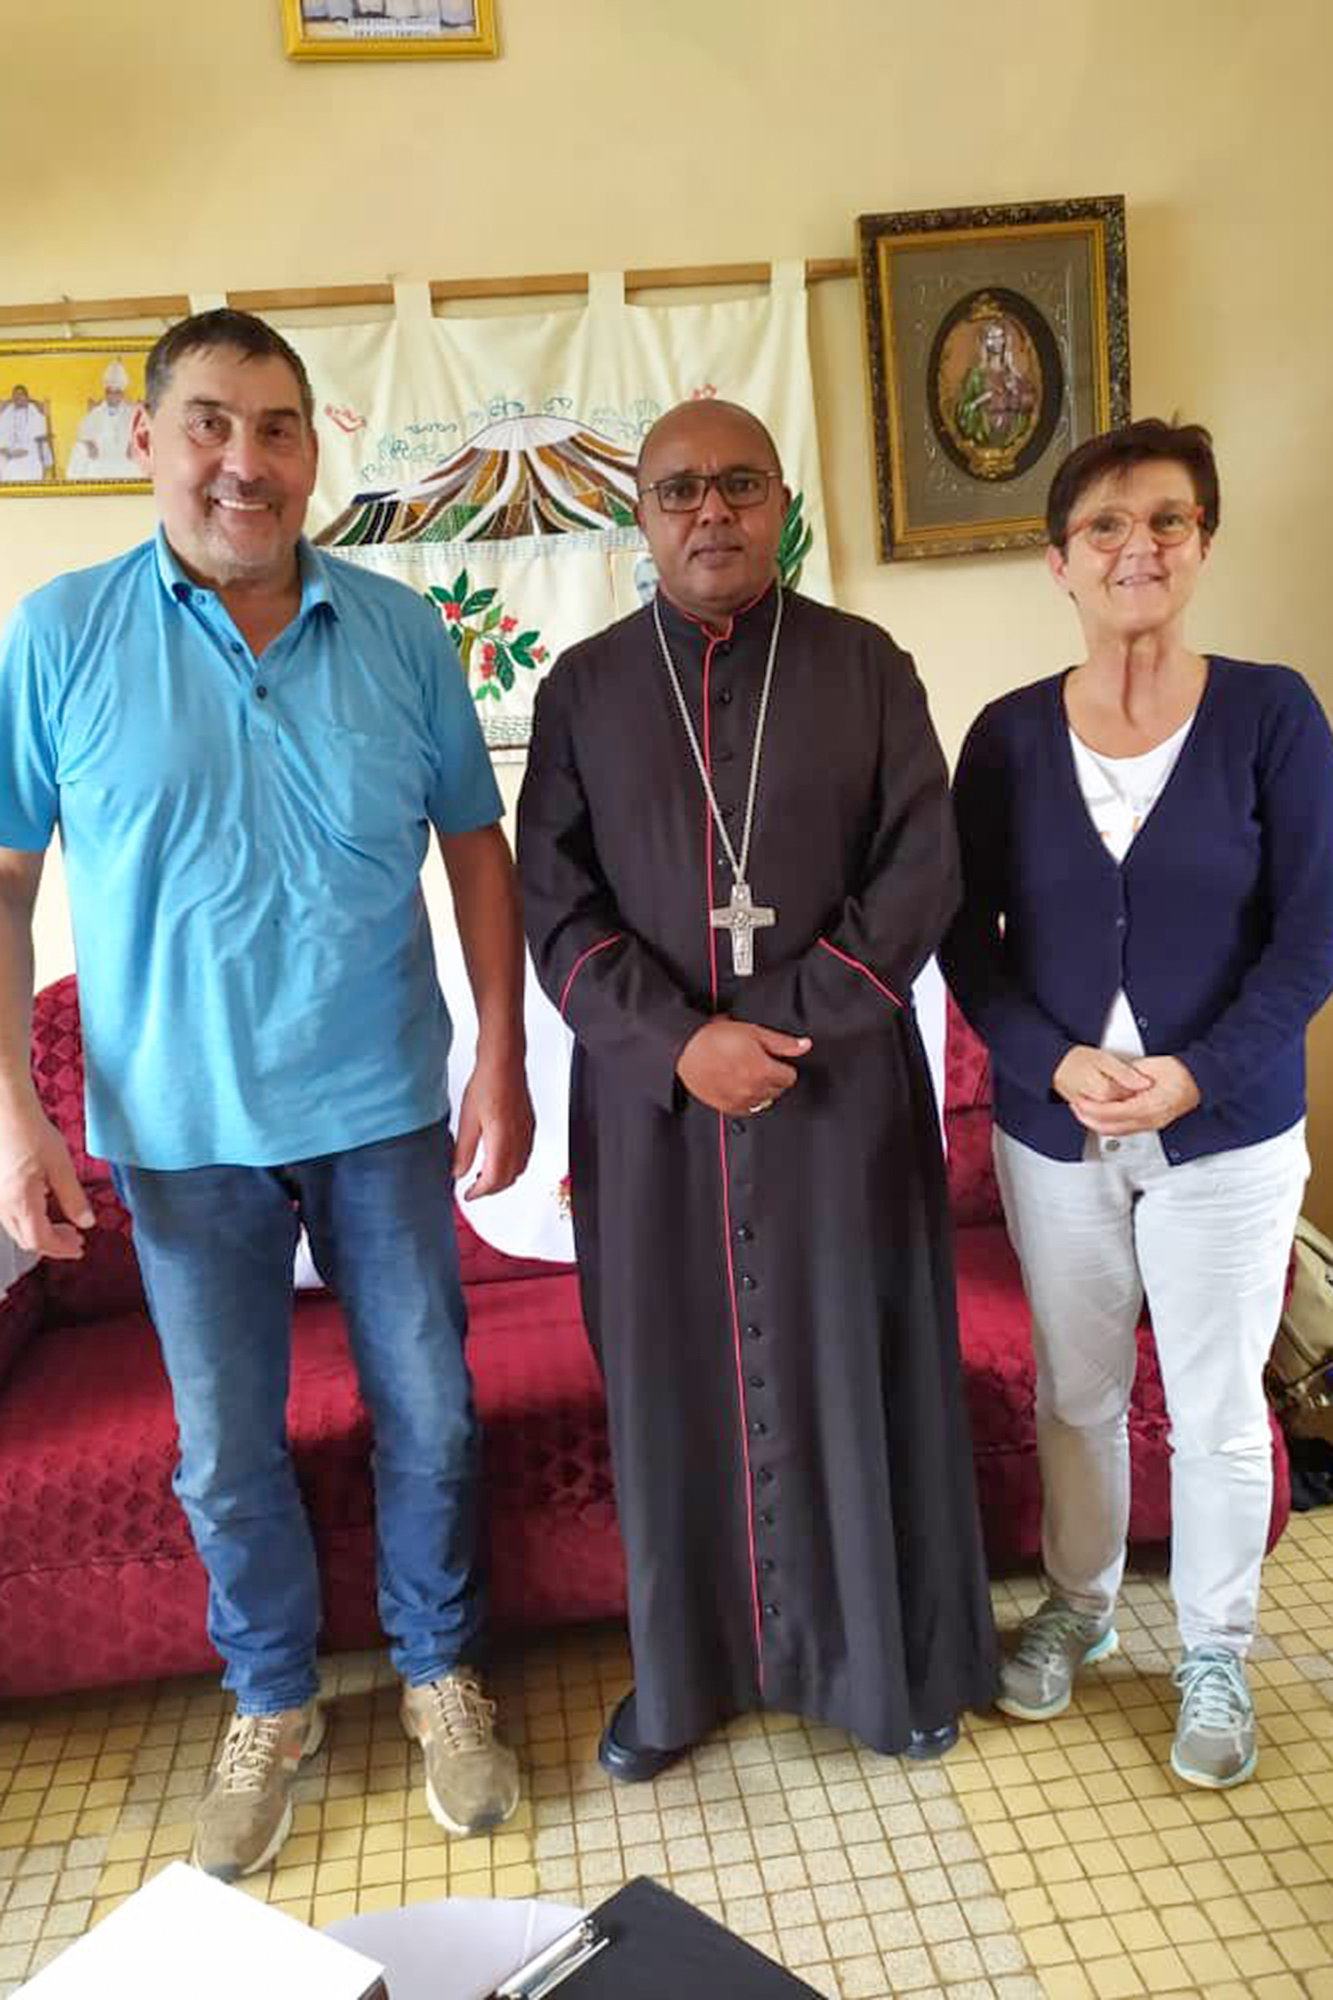 Besuch beim Bischof der Diözese Kigoma: Martin und Elke Krings wurden von  Joseph Mlola empfangen. (c) Marvin Kaes